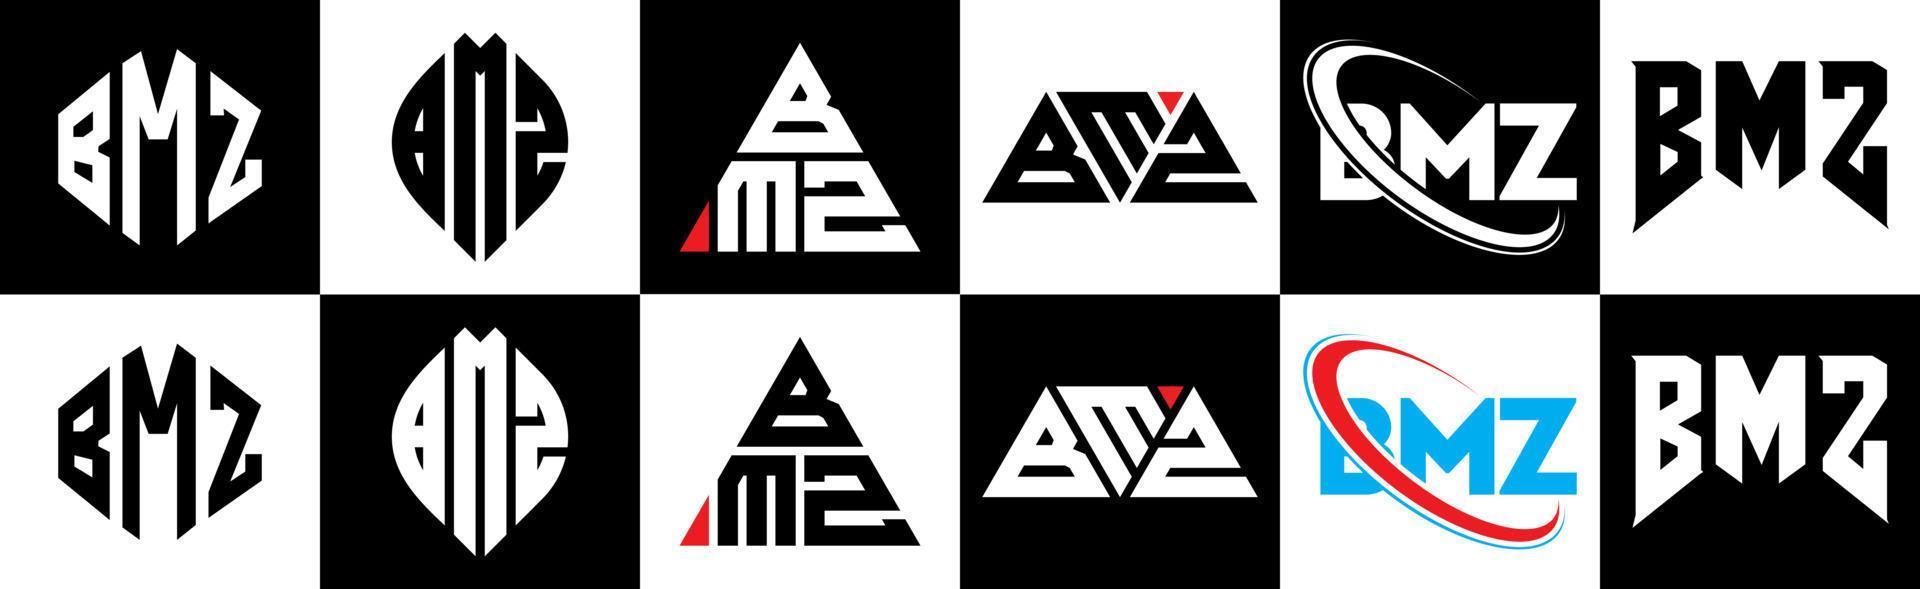 Diseño de logotipo de letra bmz en seis estilos. polígono bmz, círculo, triángulo, hexágono, estilo plano y simple con logotipo de letra de variación de color blanco y negro en una mesa de trabajo. logotipo bmz minimalista y clásico vector